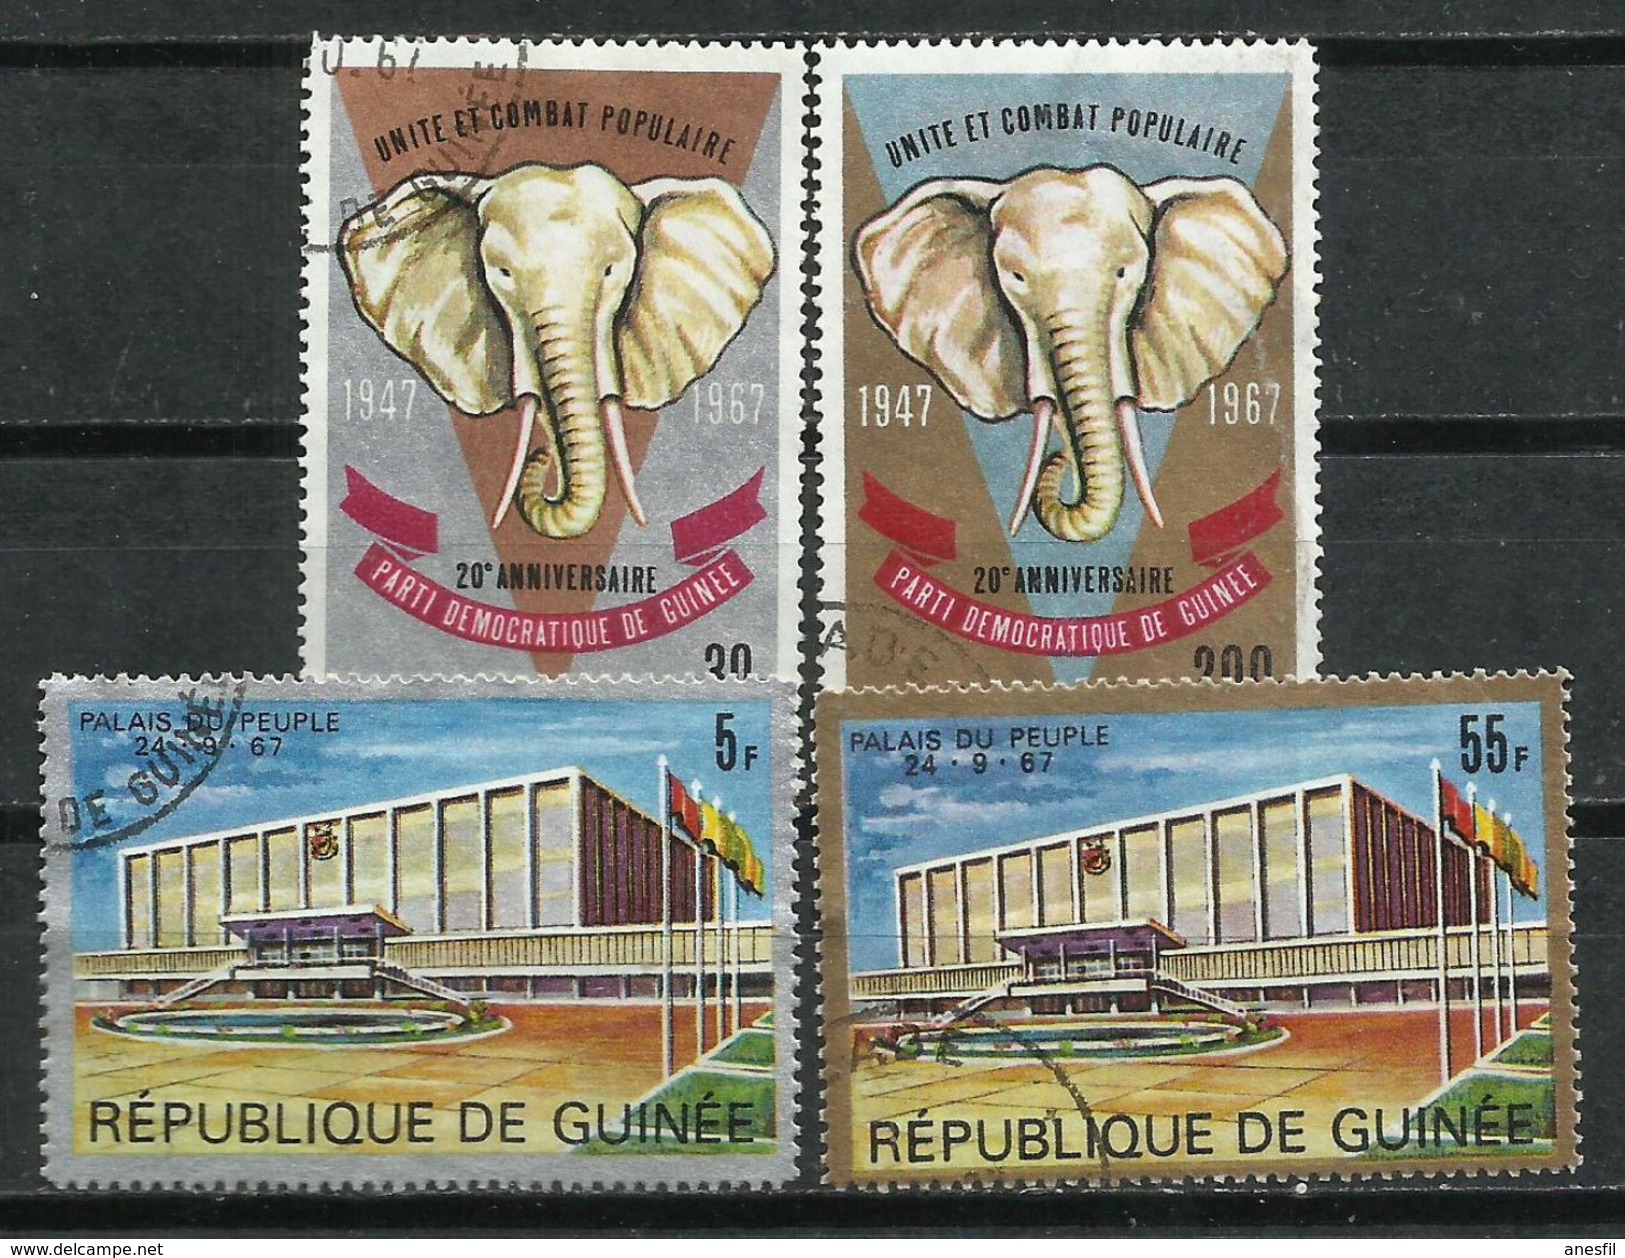 República De Guinea. 1967. Unidad Del Congreso Popular. - Elephants